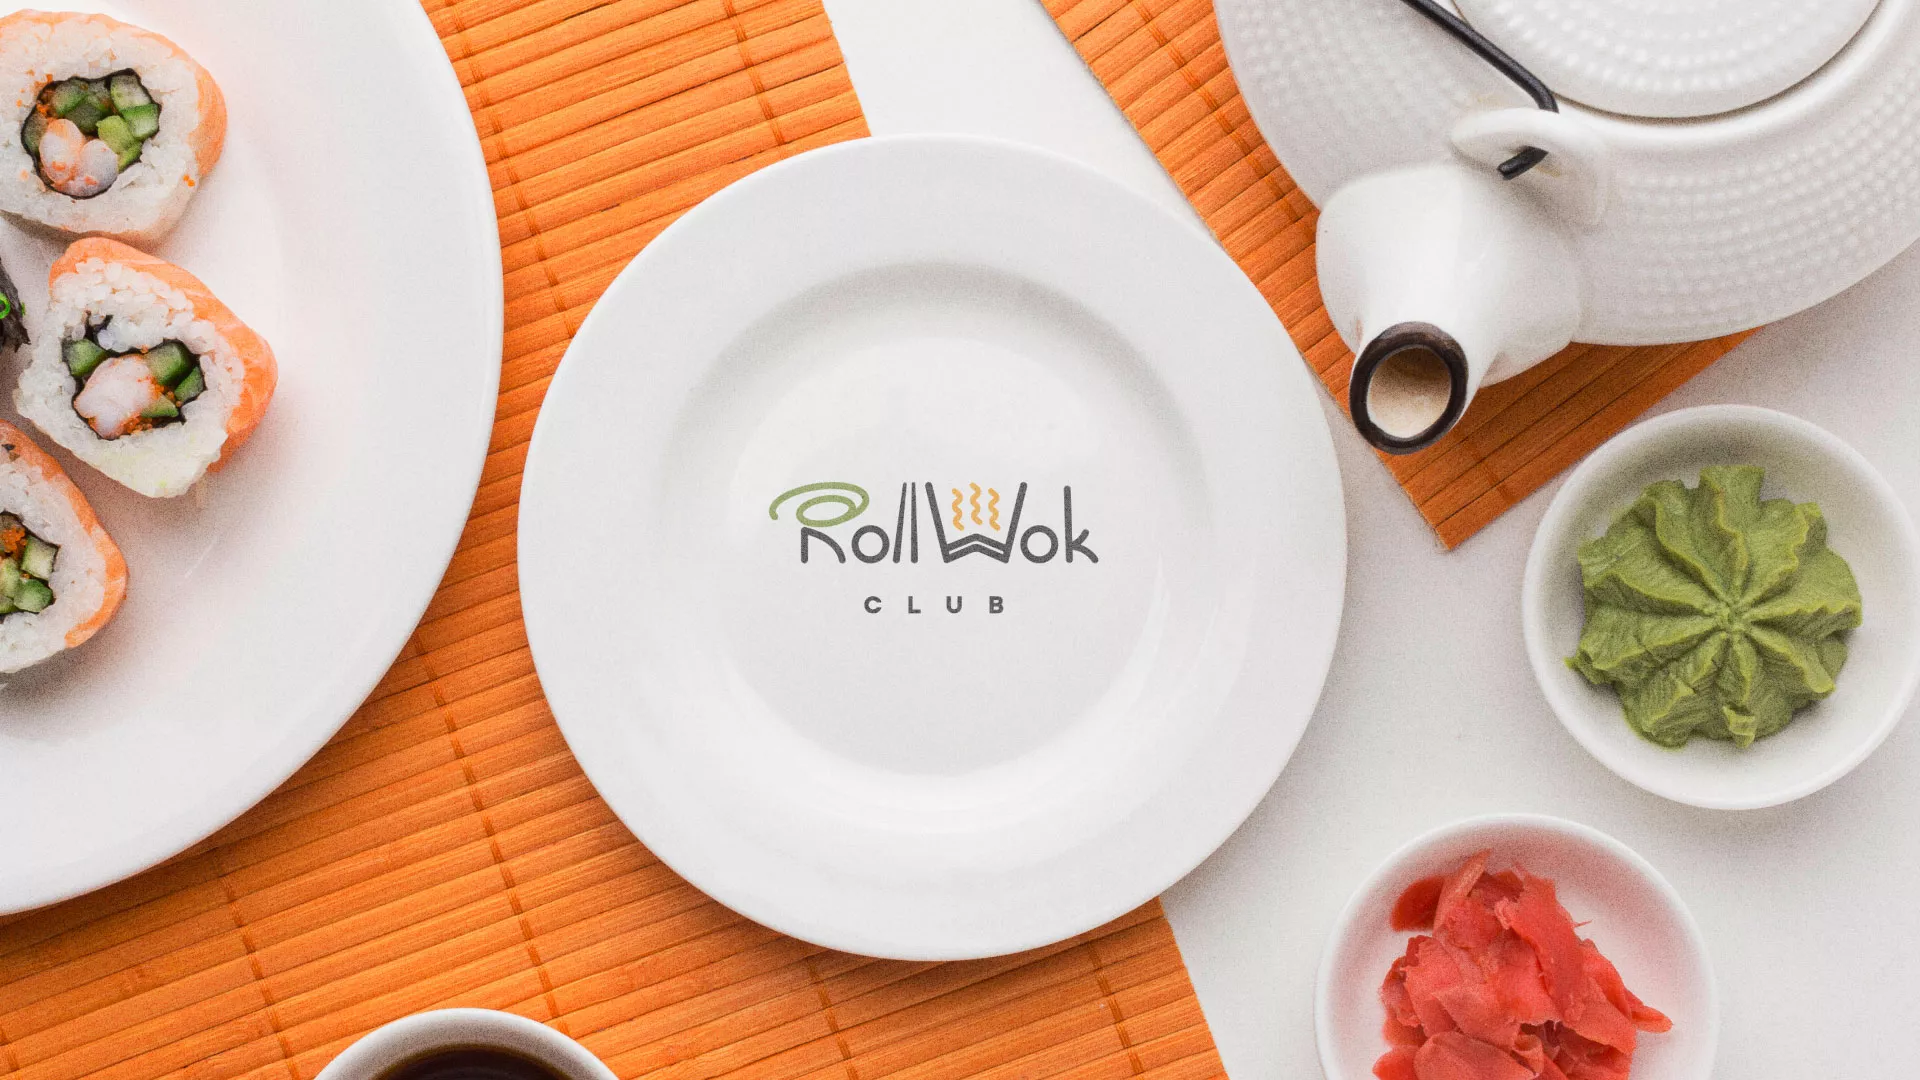 Разработка логотипа и фирменного стиля суши-бара «Roll Wok Club» в Азове